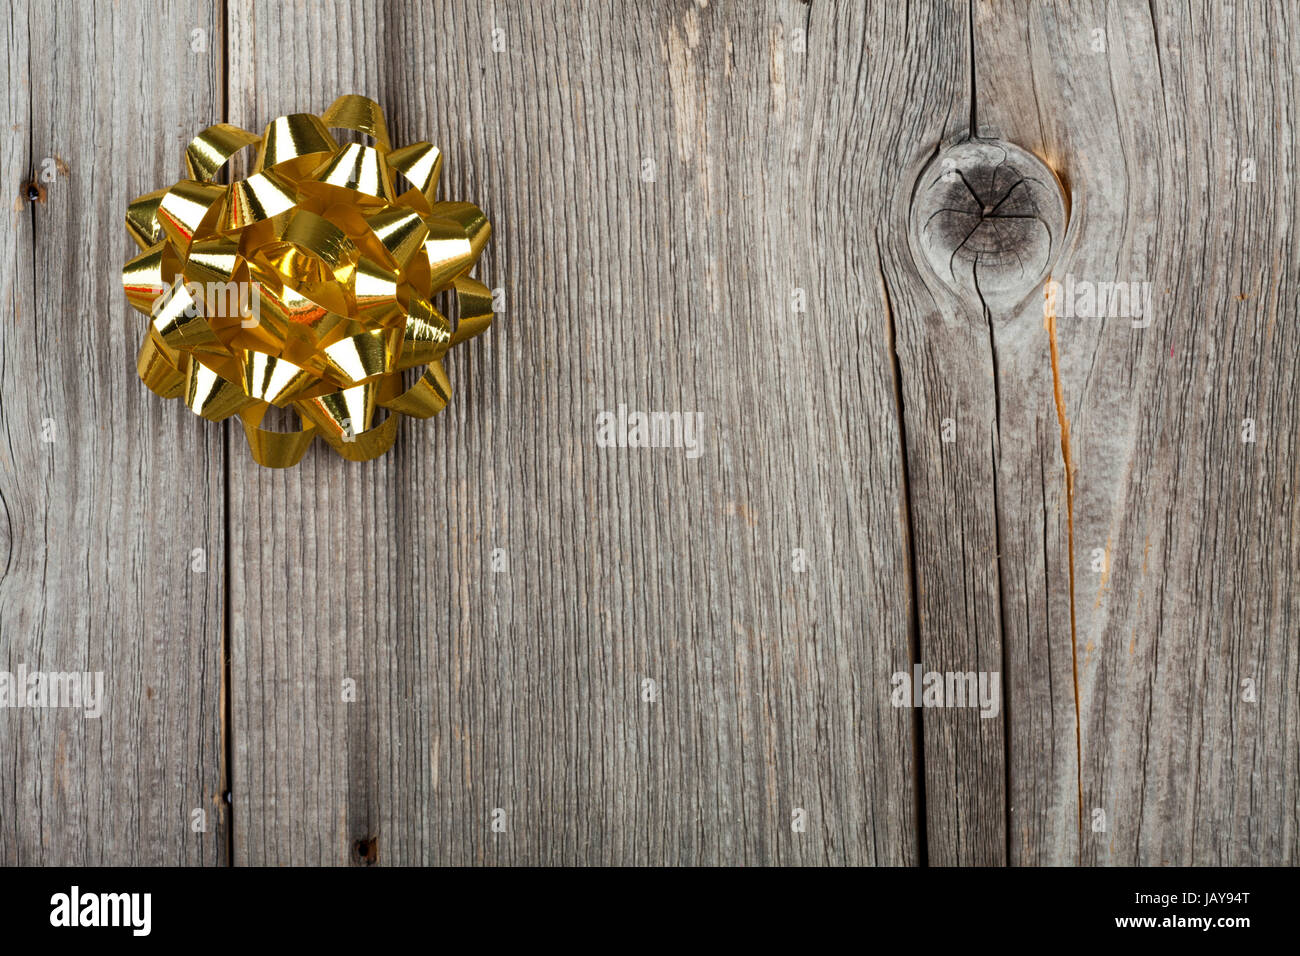 Weihnachtshintergrund mit goldener Geschenkschleife auf rustikalem Holzhintergrund Stock Photo